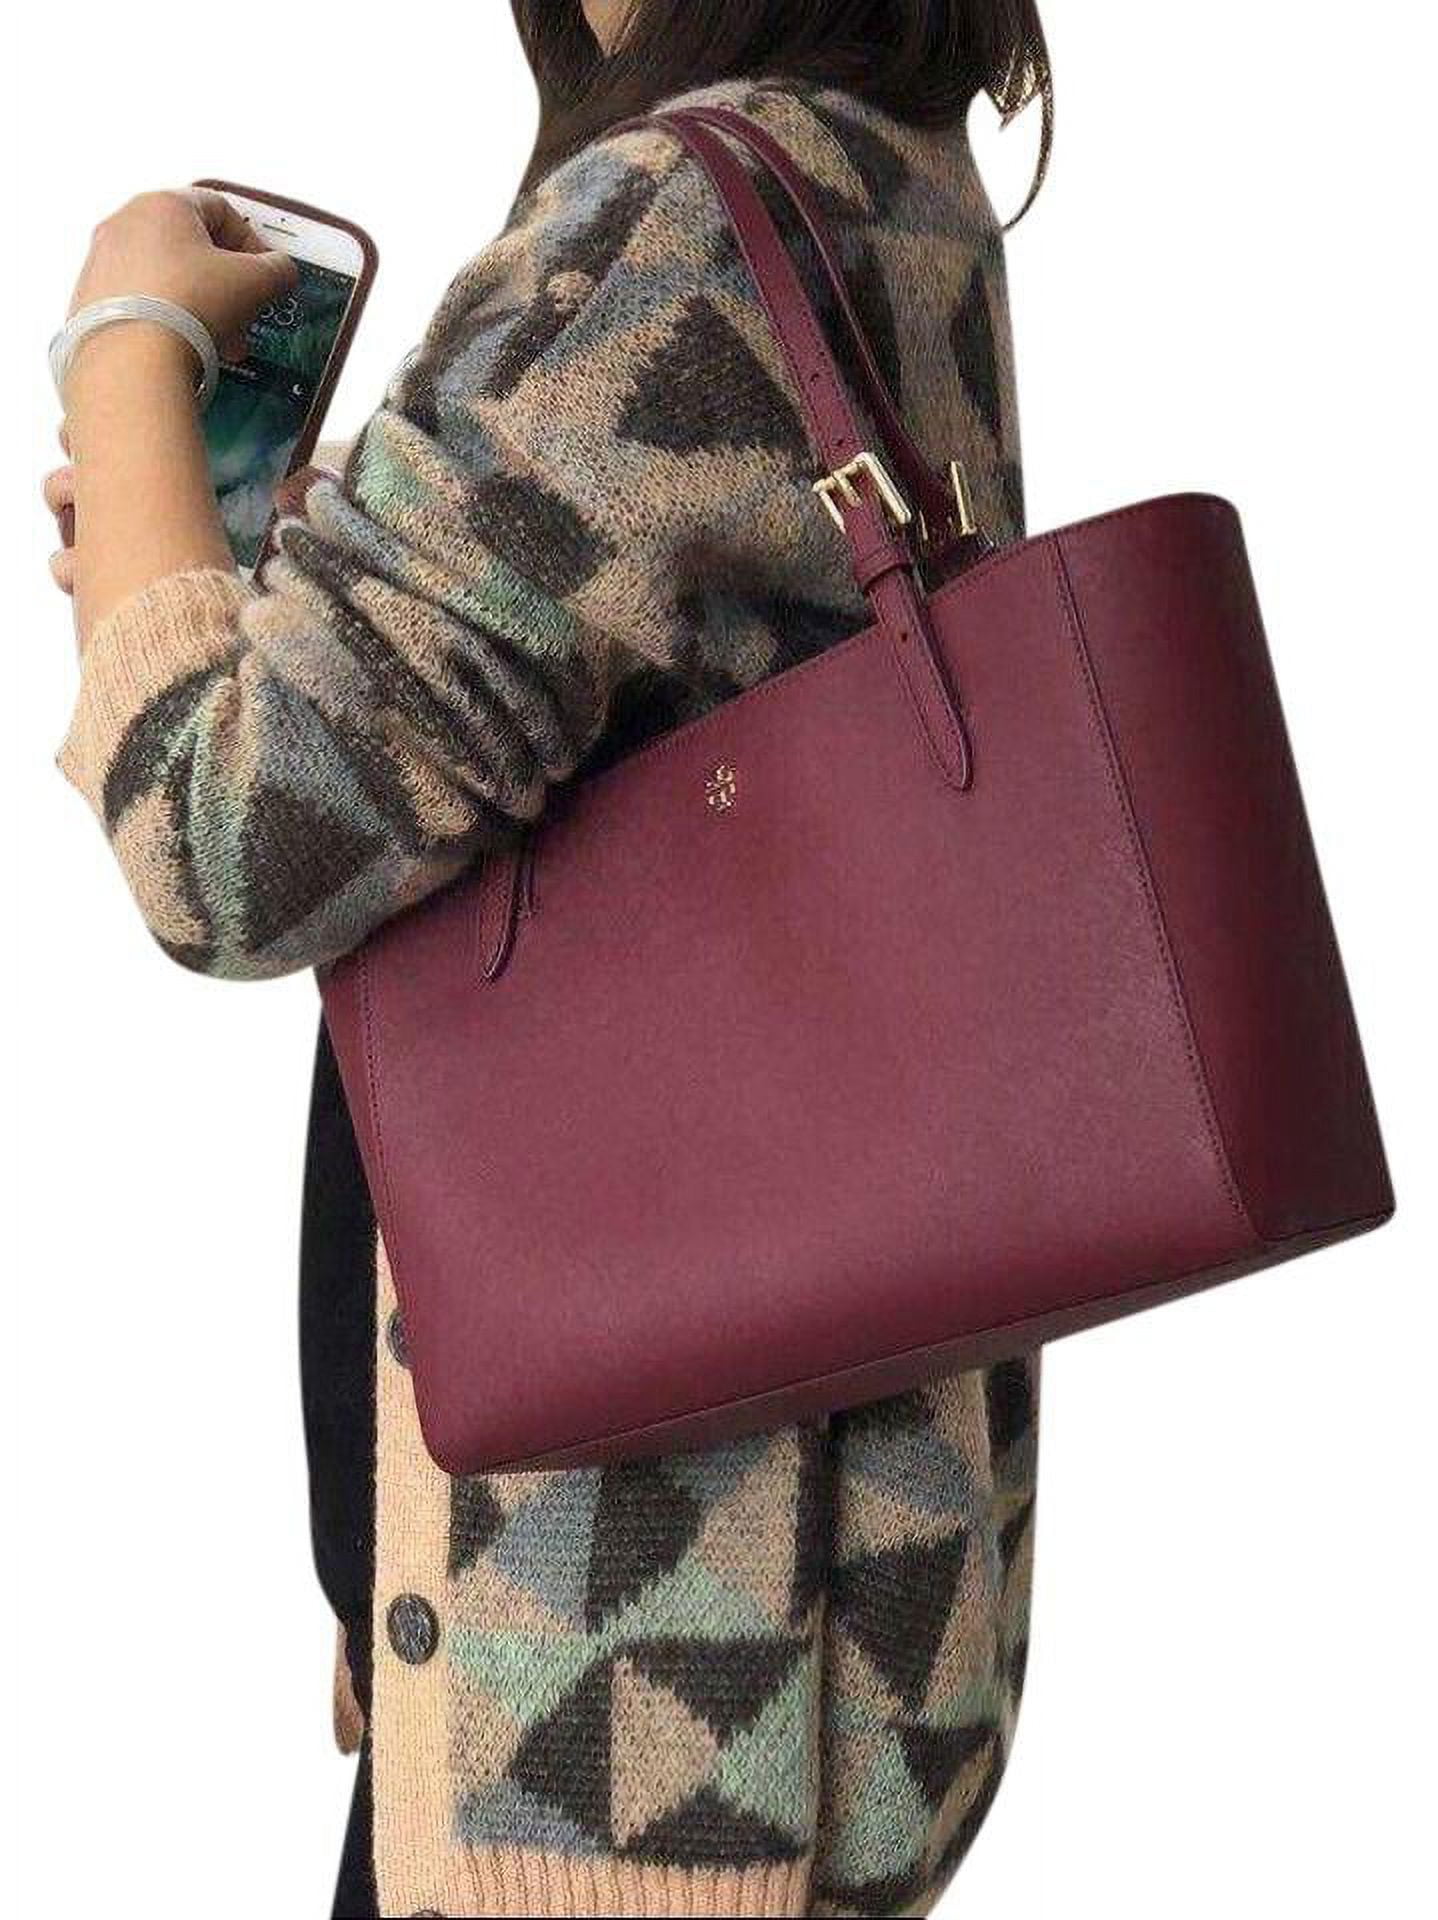 TORY BURCH Emerson Brilliant Red Saffiano Leather Small Top Zip Tote Handbag